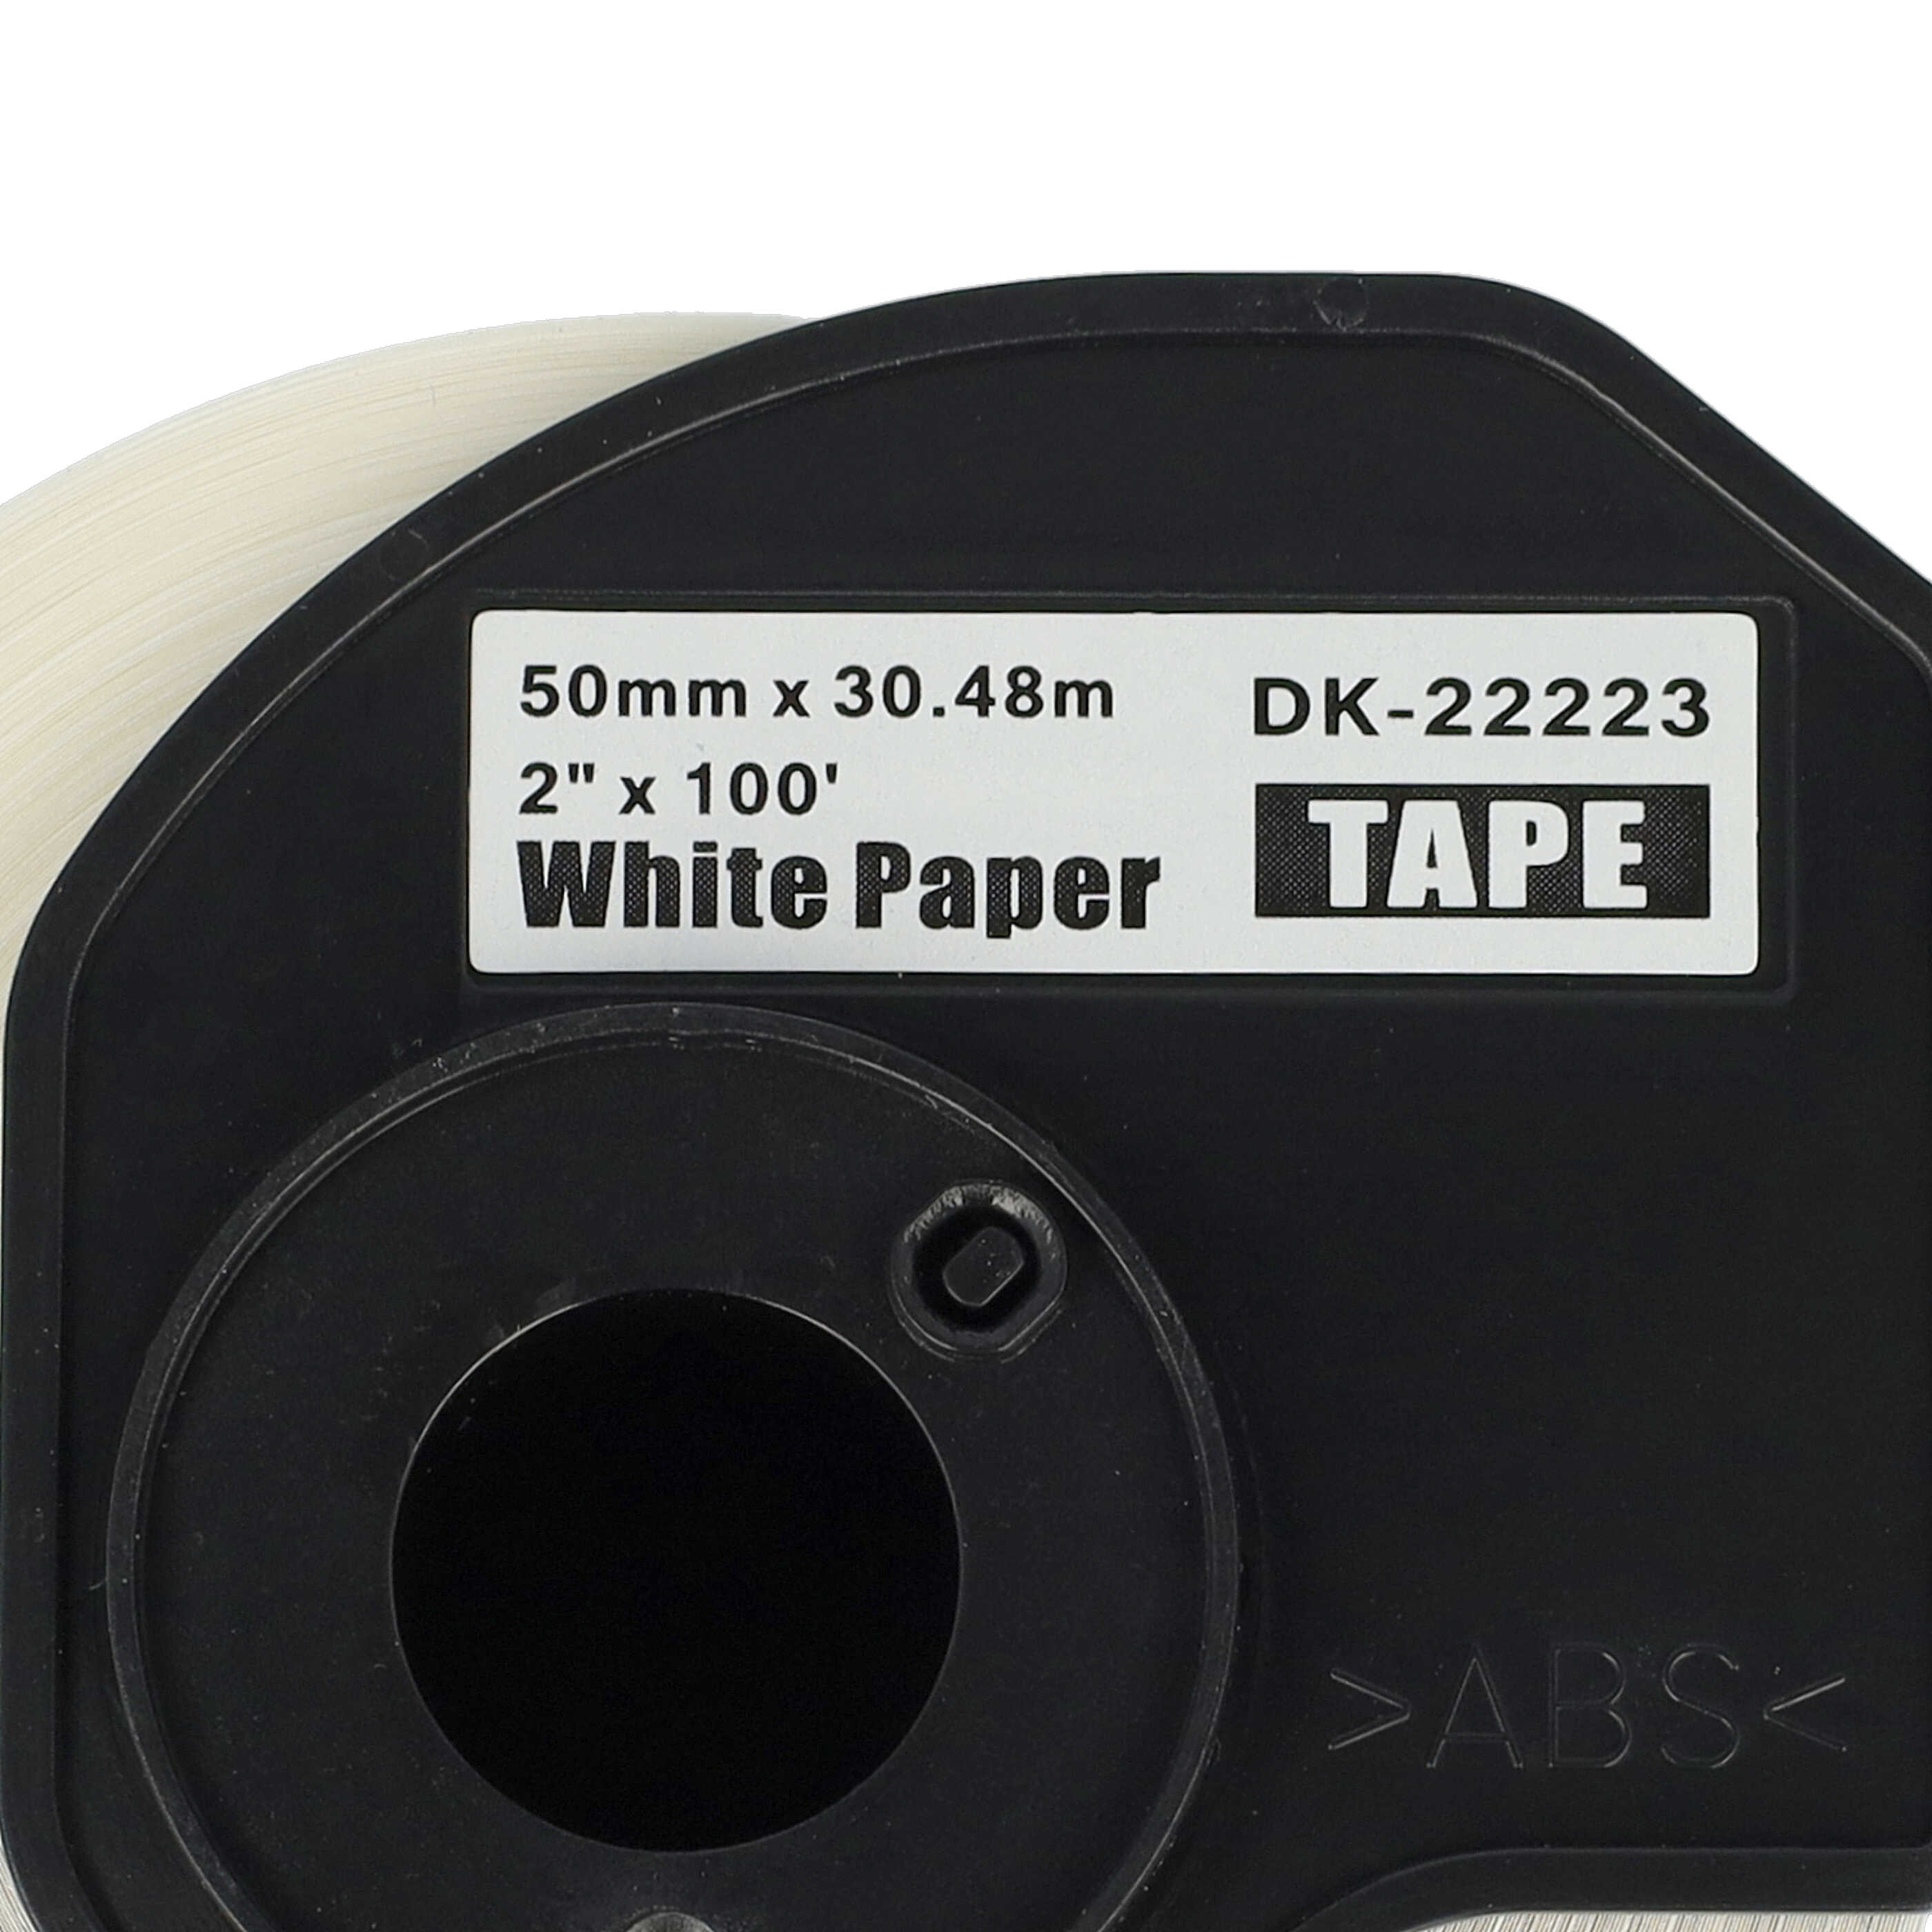 10x Etiketten als Ersatz für Brother DK-22223 Etikettendrucker - Premium 50mm x 30,48m + Halter